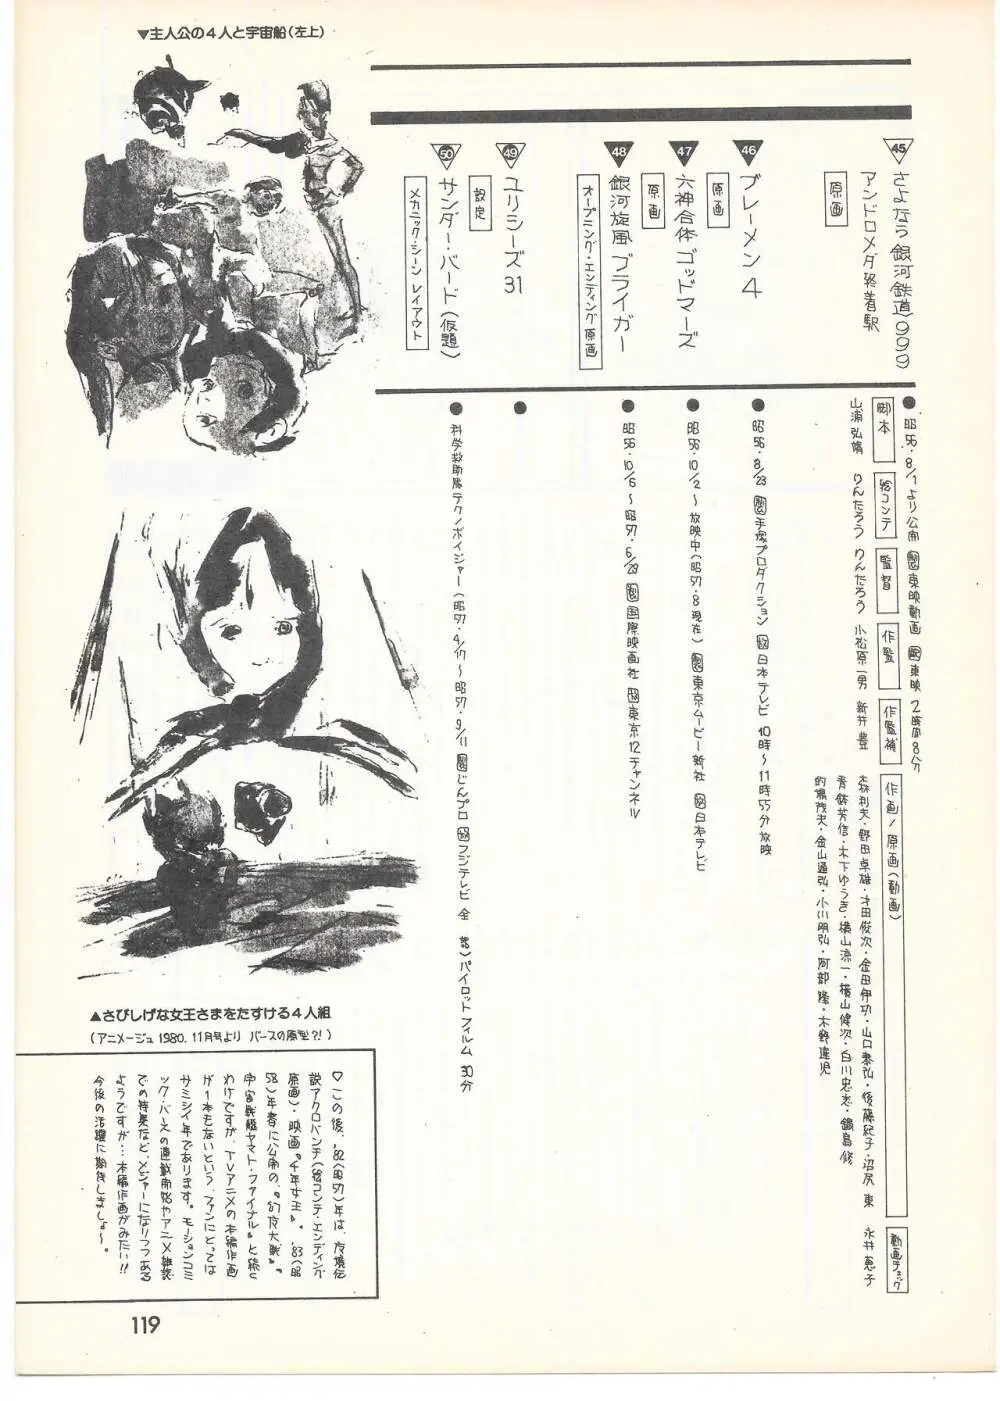 THE ANIMATOR 1 金田伊功特集号 114ページ